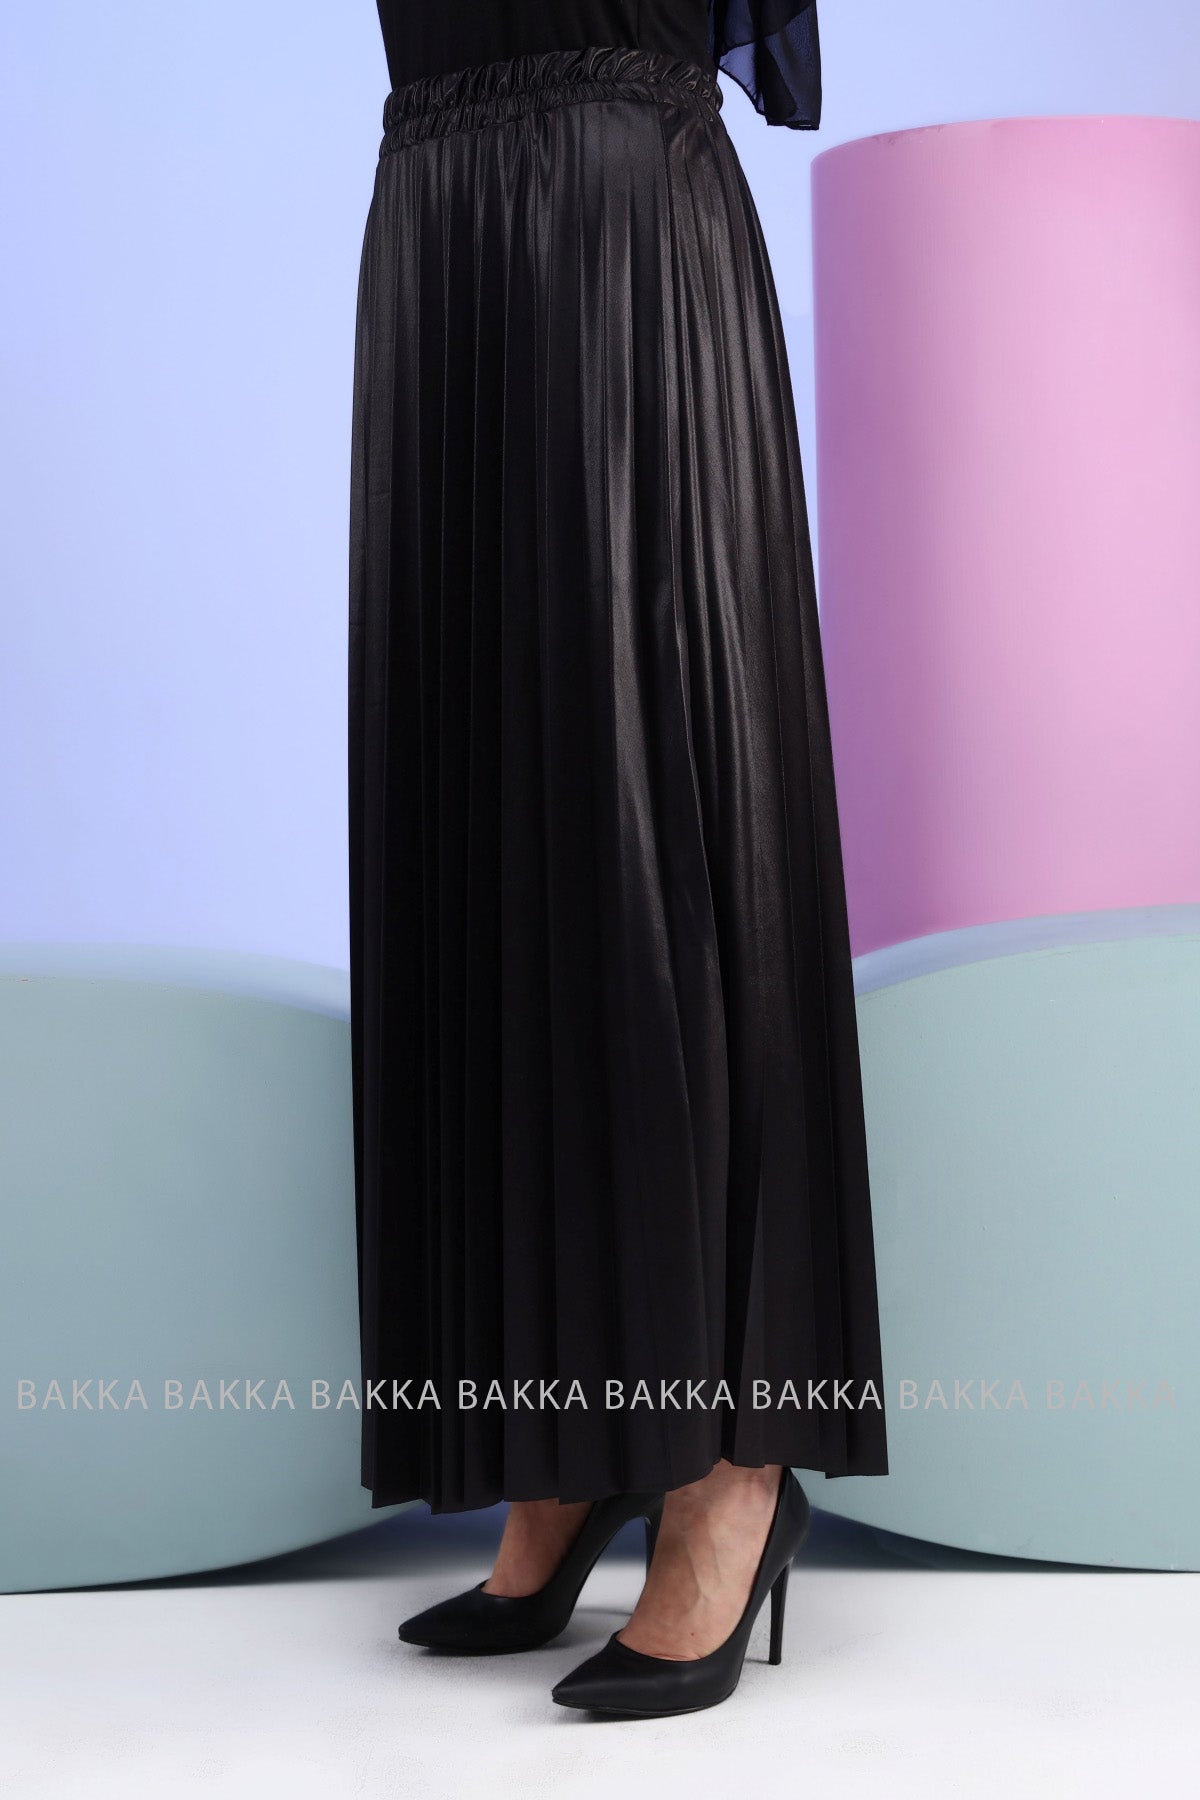 Skirt - 9007 - Black - bakkaclothing